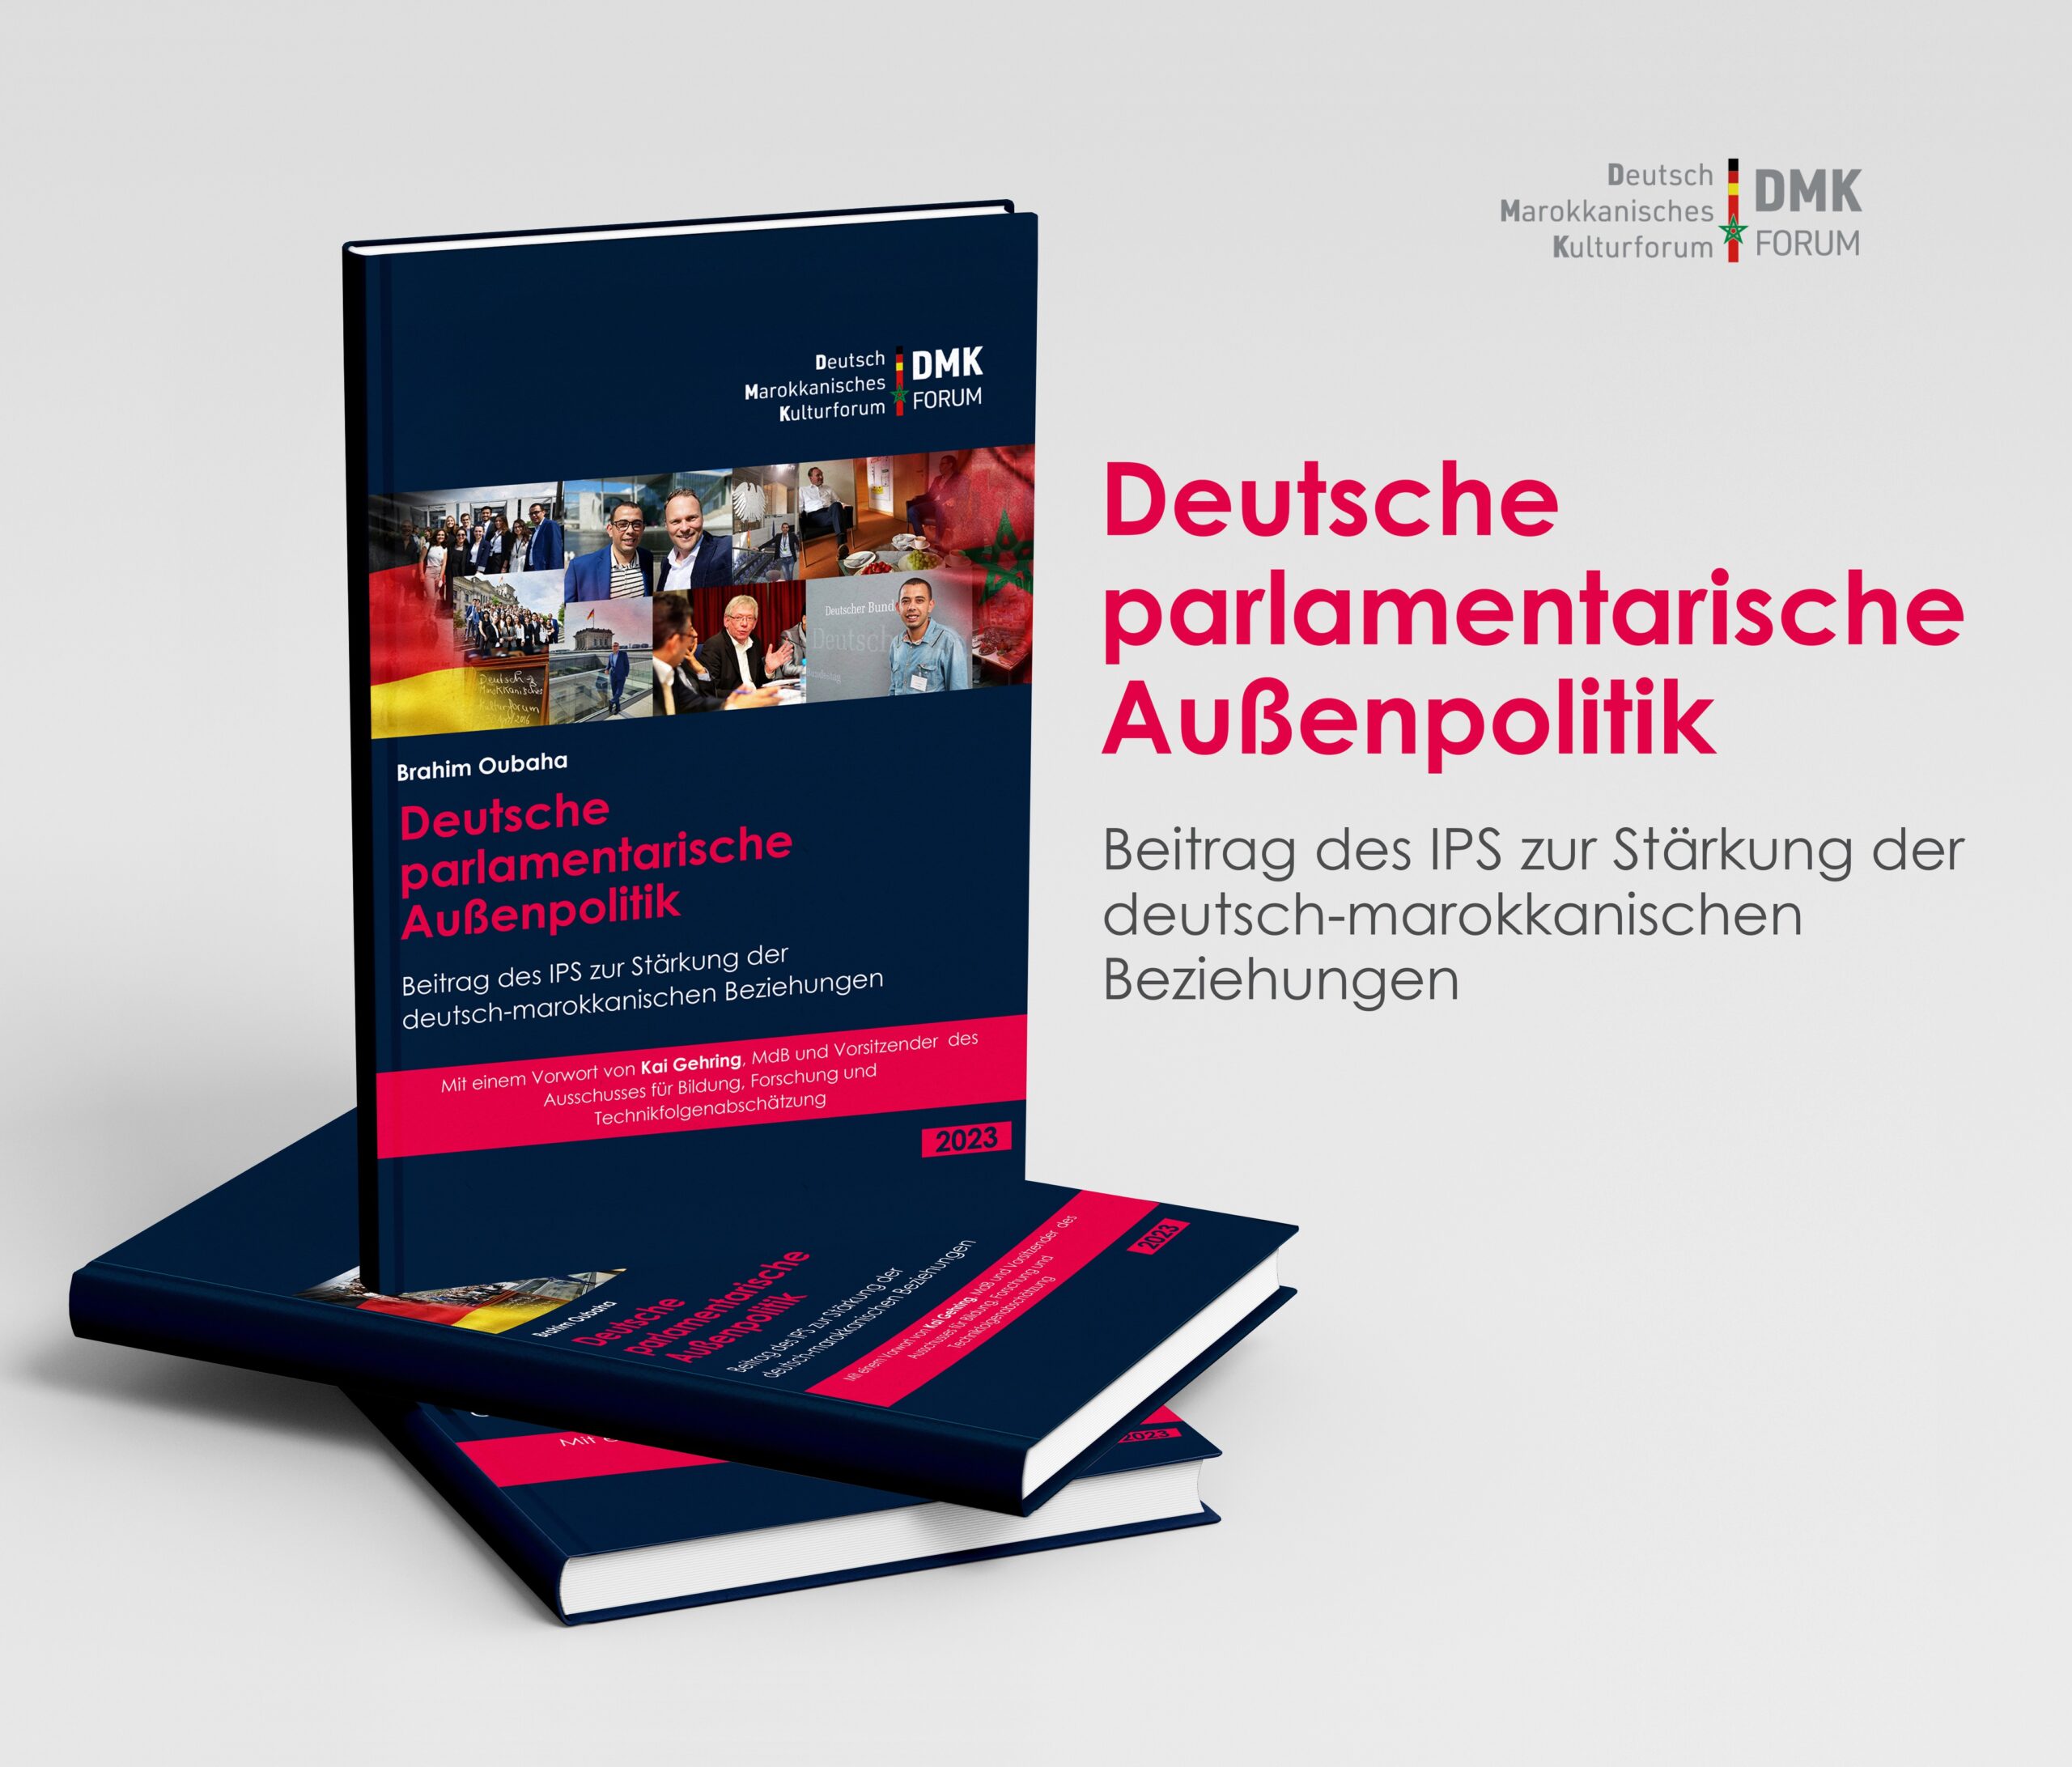 Deutsche parlamentarische Außenpolitik: Beitrag des IPS zur Stärkung der deutsch-marokkanischen Beziehungen